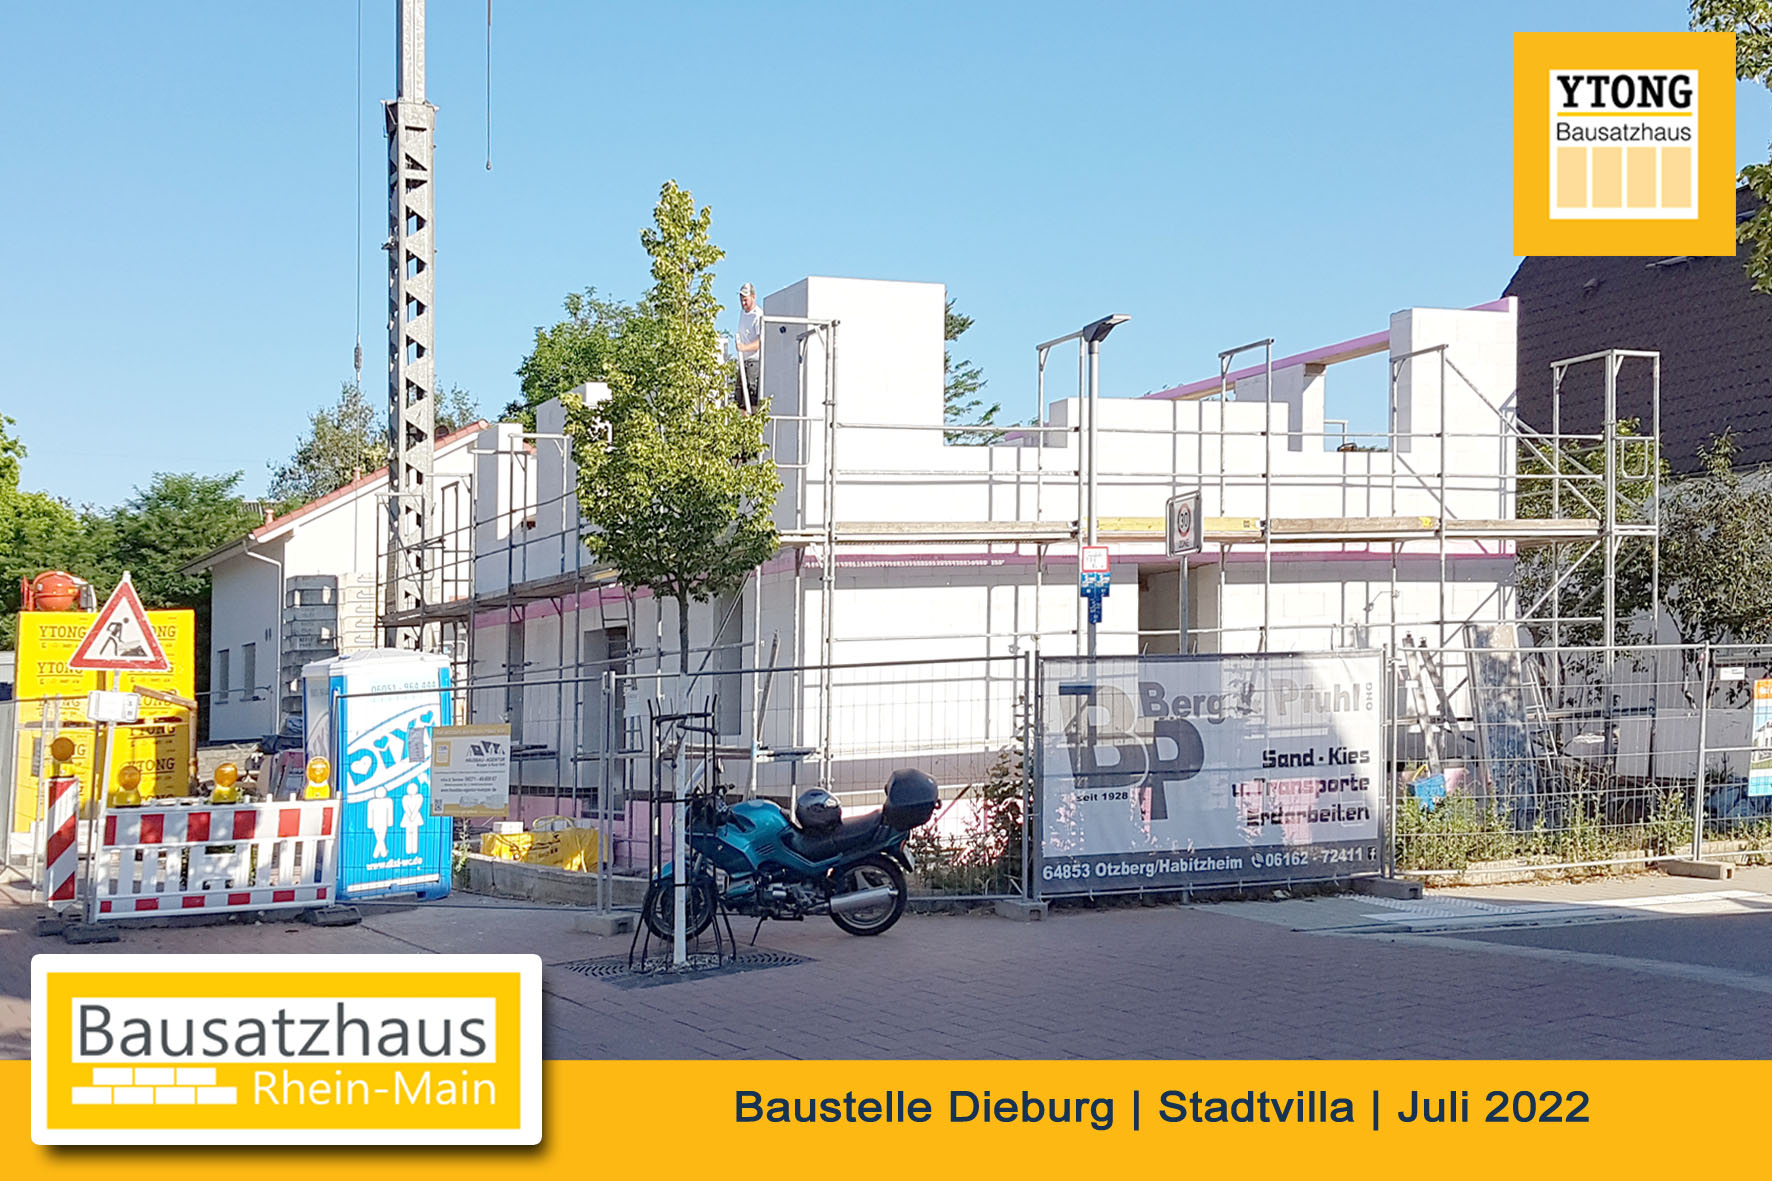 Marcus Kurz Bausatzhaus Rhein-Main, Ytong Bausatzhaus, Selbstbau, Gross-Umstadt, Messel